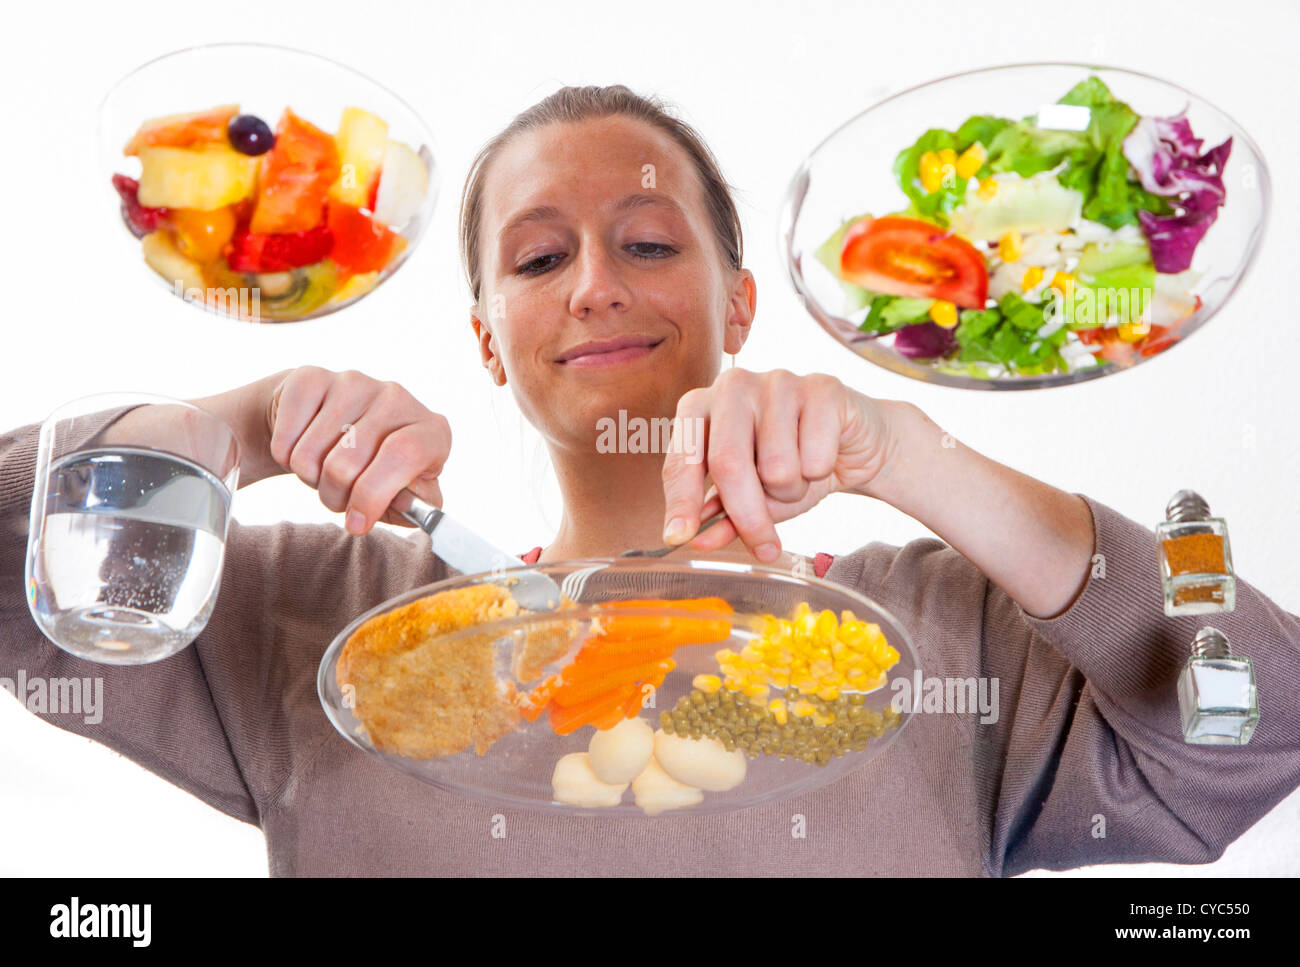 Junge Frau sitzt an einem Tisch aus Glas. Essen eine Mahlzeit, Schnitzel, Kartoffeln, Gemüse, gemischter Salat, Obstsalat, Wasser. Stockfoto